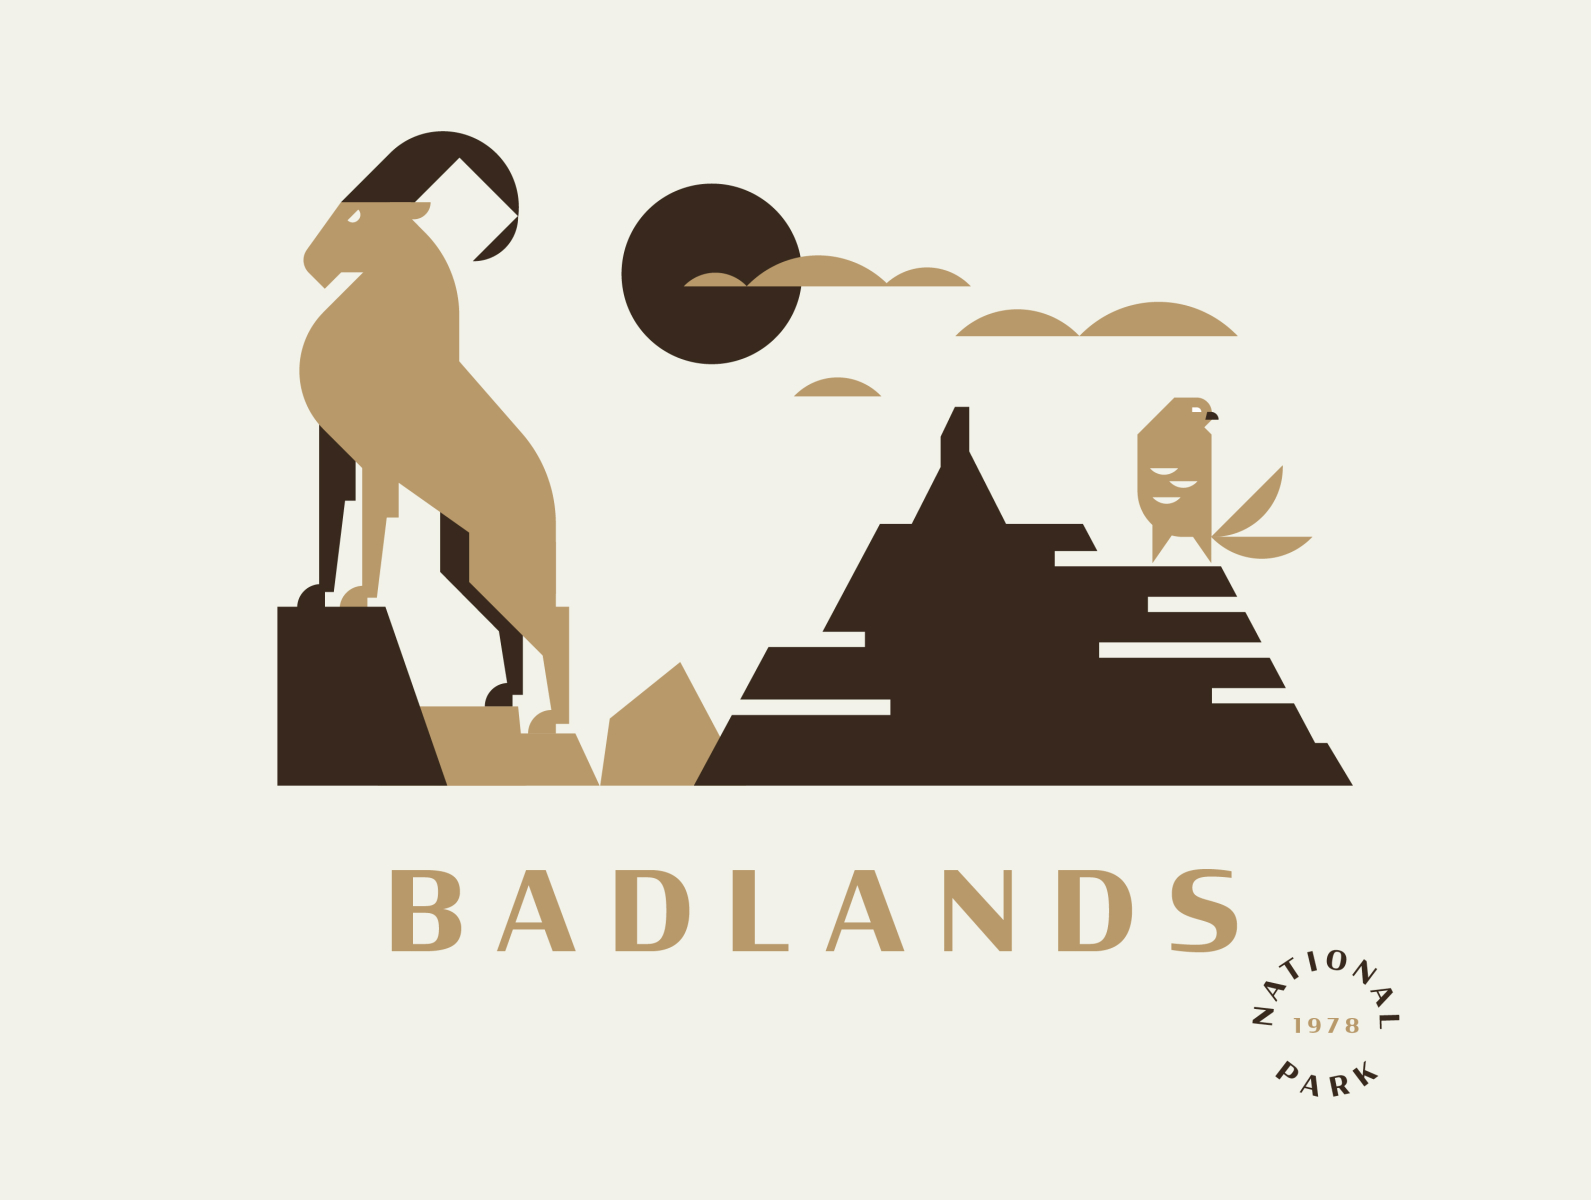 Badlands National Park badlands hawk illustration national park ram